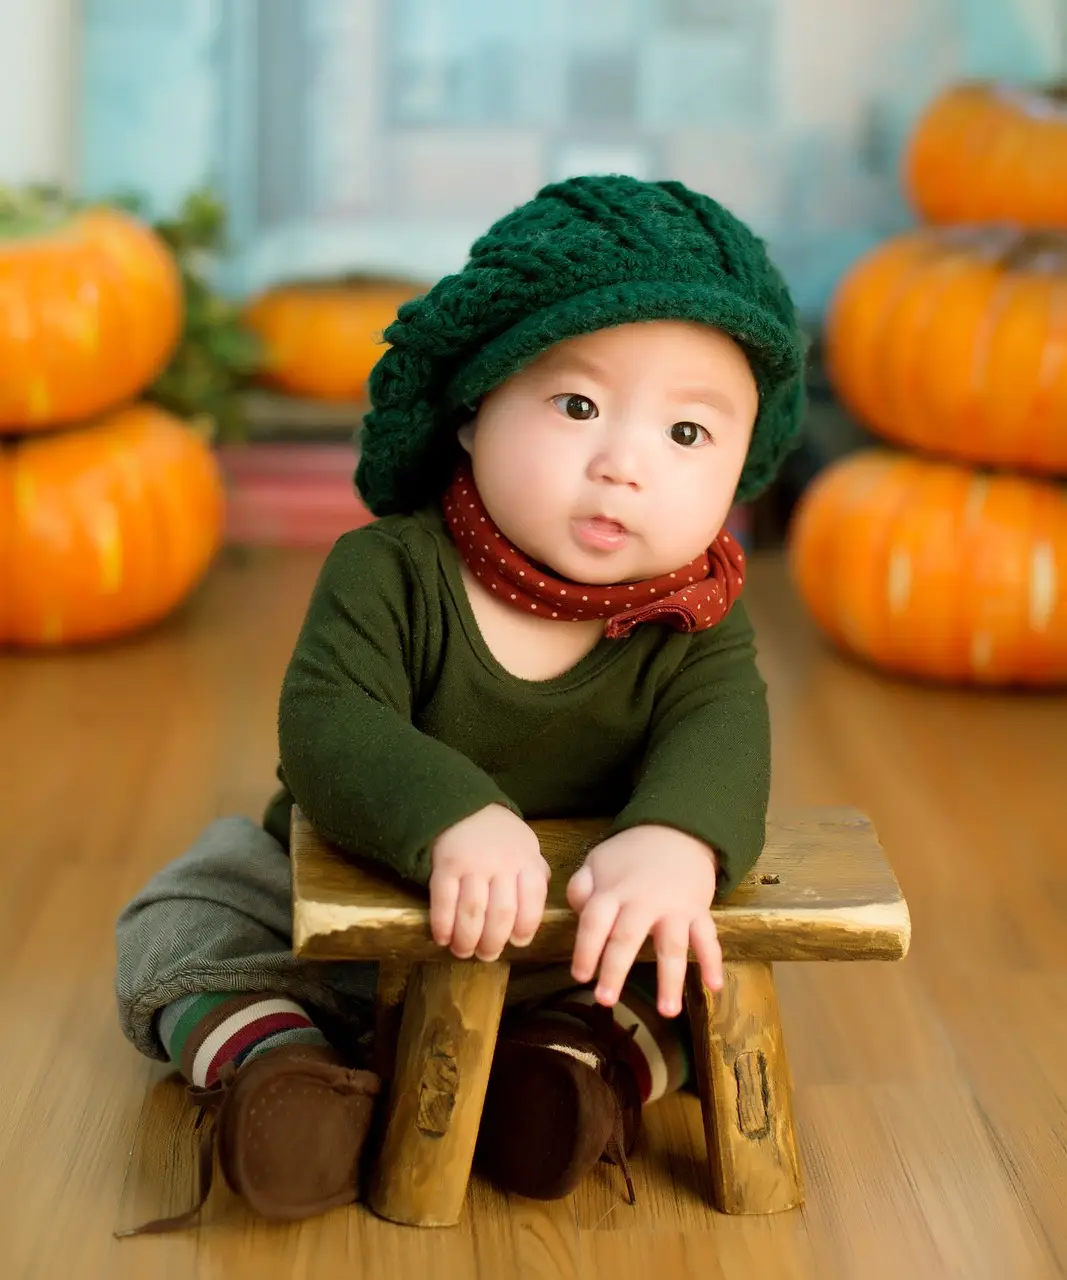 부모급여- 실내 나무바닥위 좌측 우측 호박이 2개씩 쌓인 배경으로 초록색 옷과 모자를 쓰고 앉아있는 아기